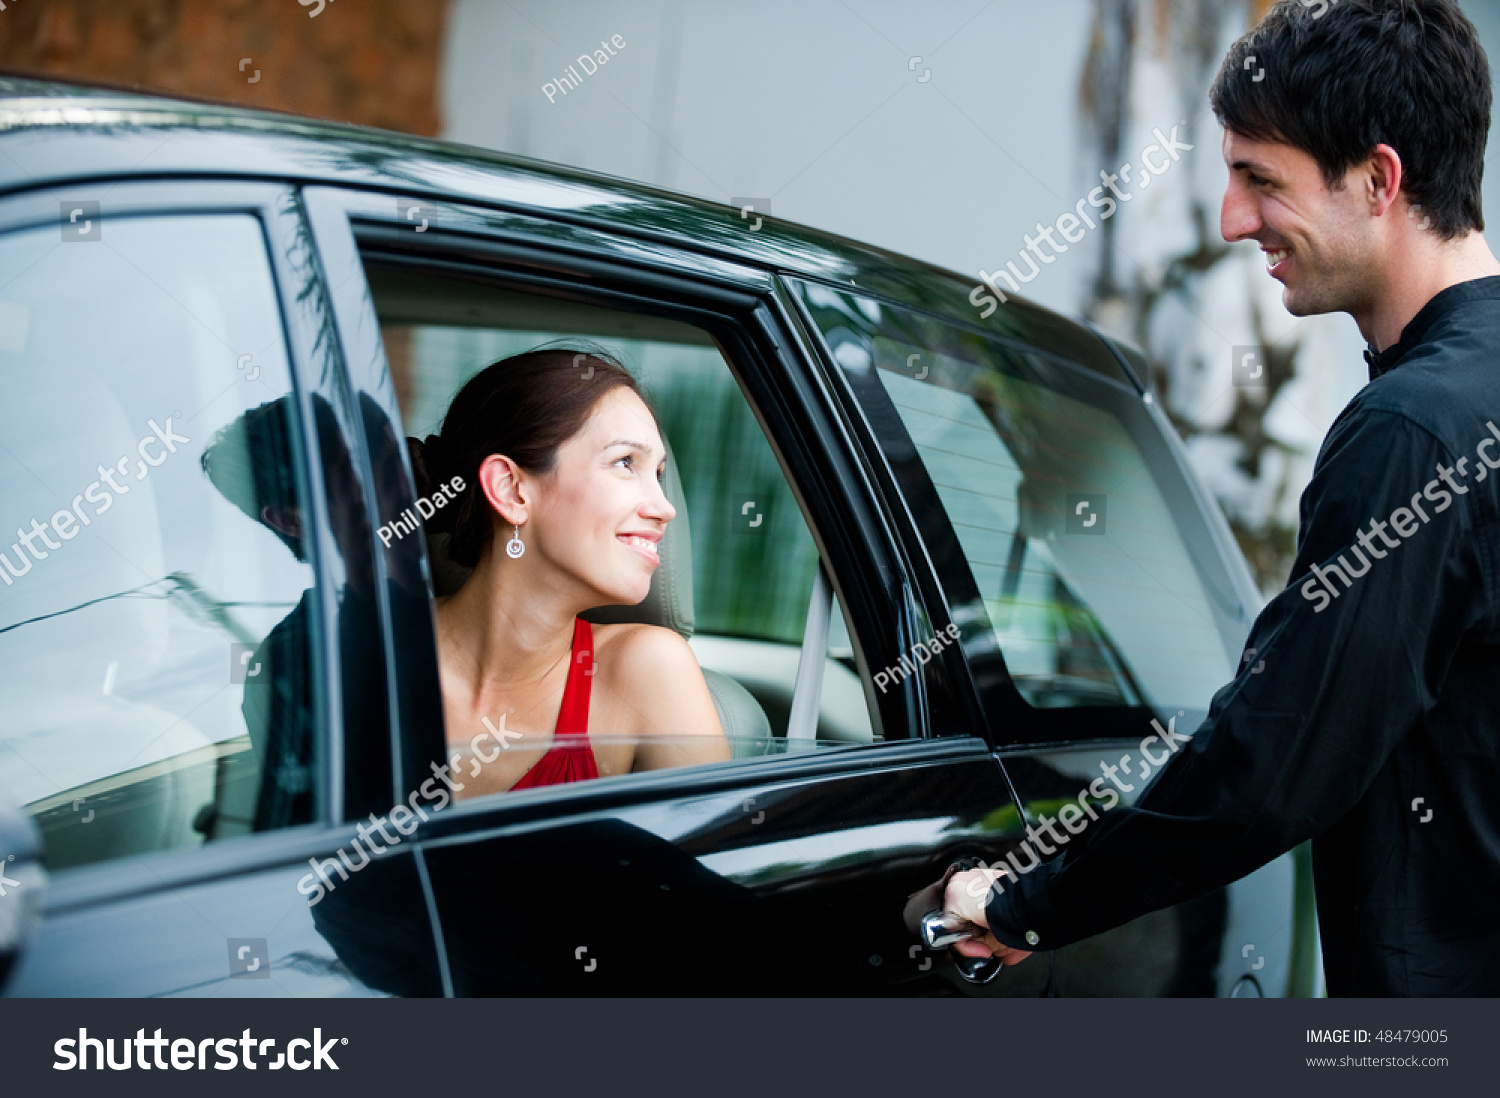 Жена с незнакомым мужчиной. Мужчина открывает дверь машины. Девушка открывает дверь машины. Мужчина и женщина в автомобиле. Открытая дверь машины.